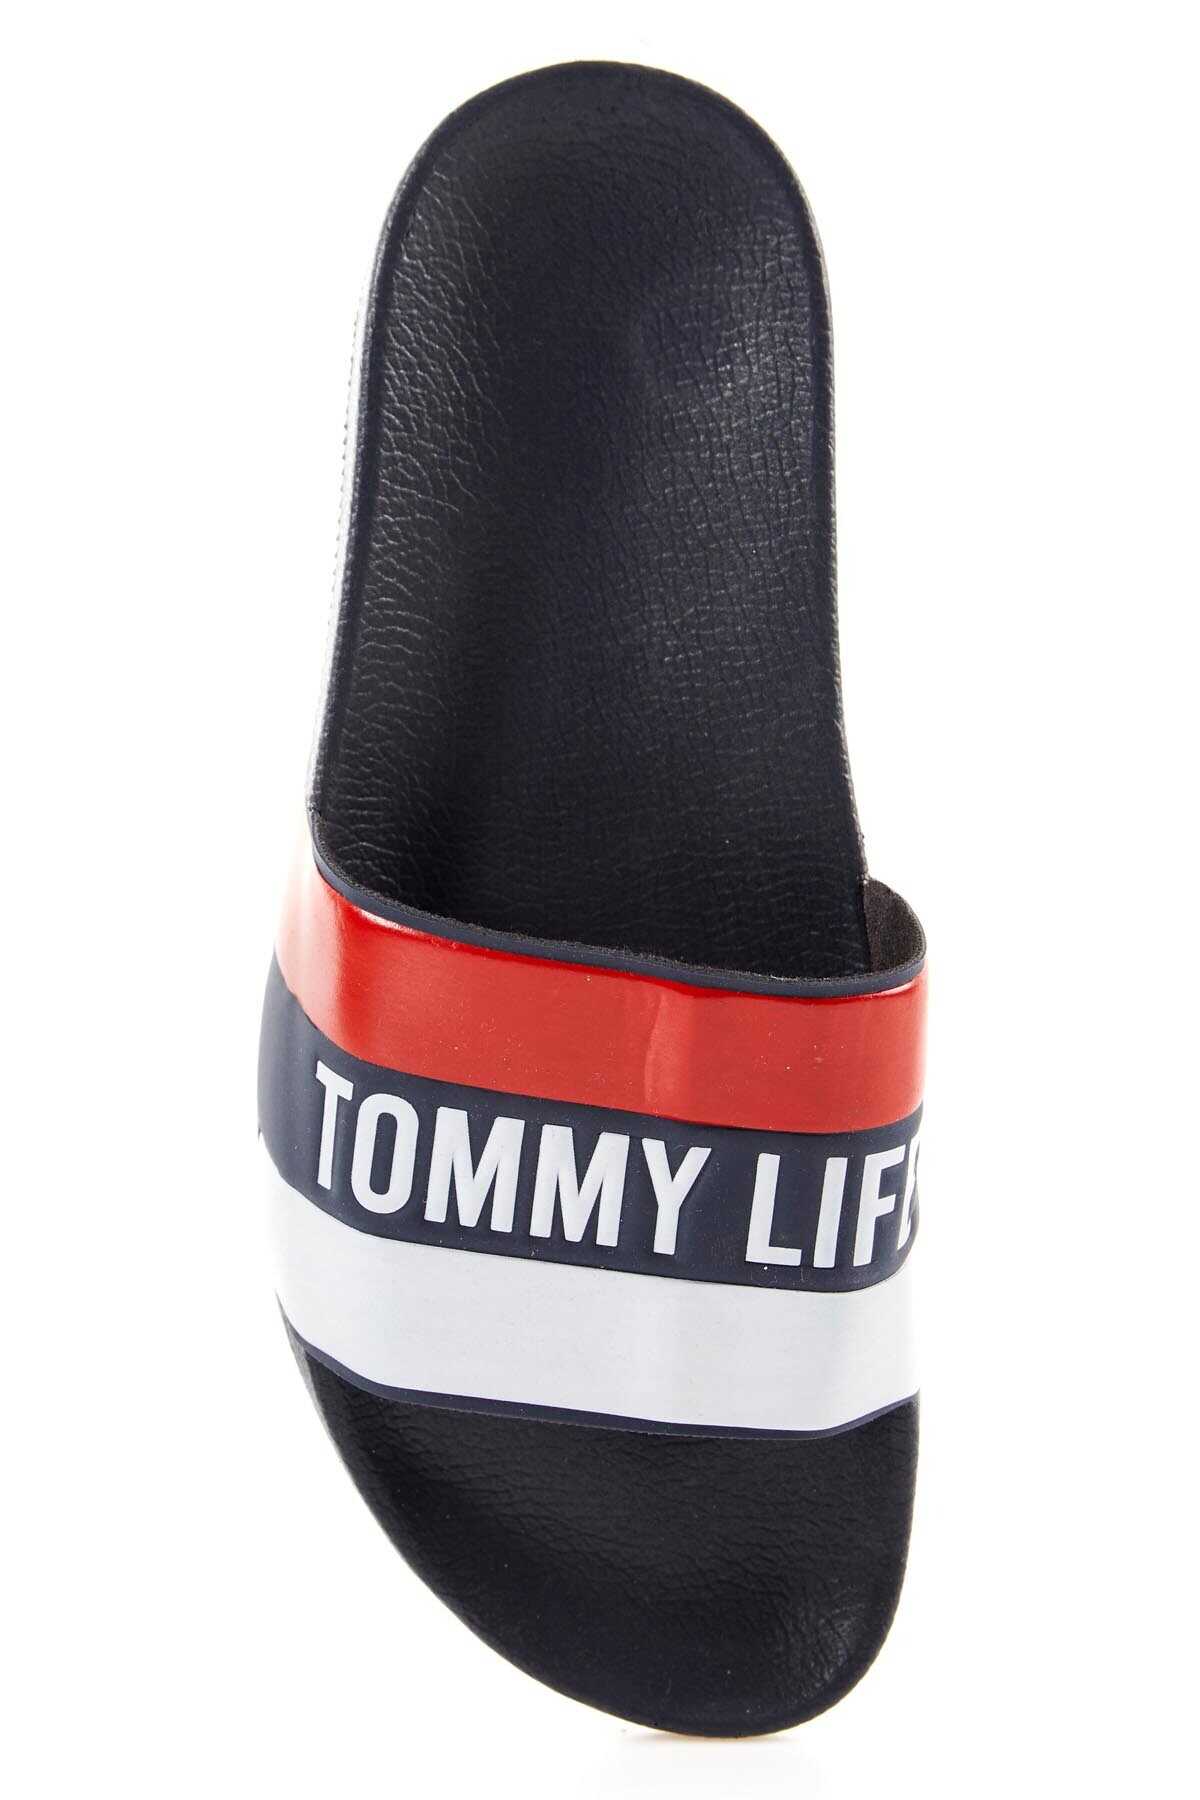 Tommylife Toptan Lacivert Renkli Yazı Baskılı Erkek Terlik - 89085